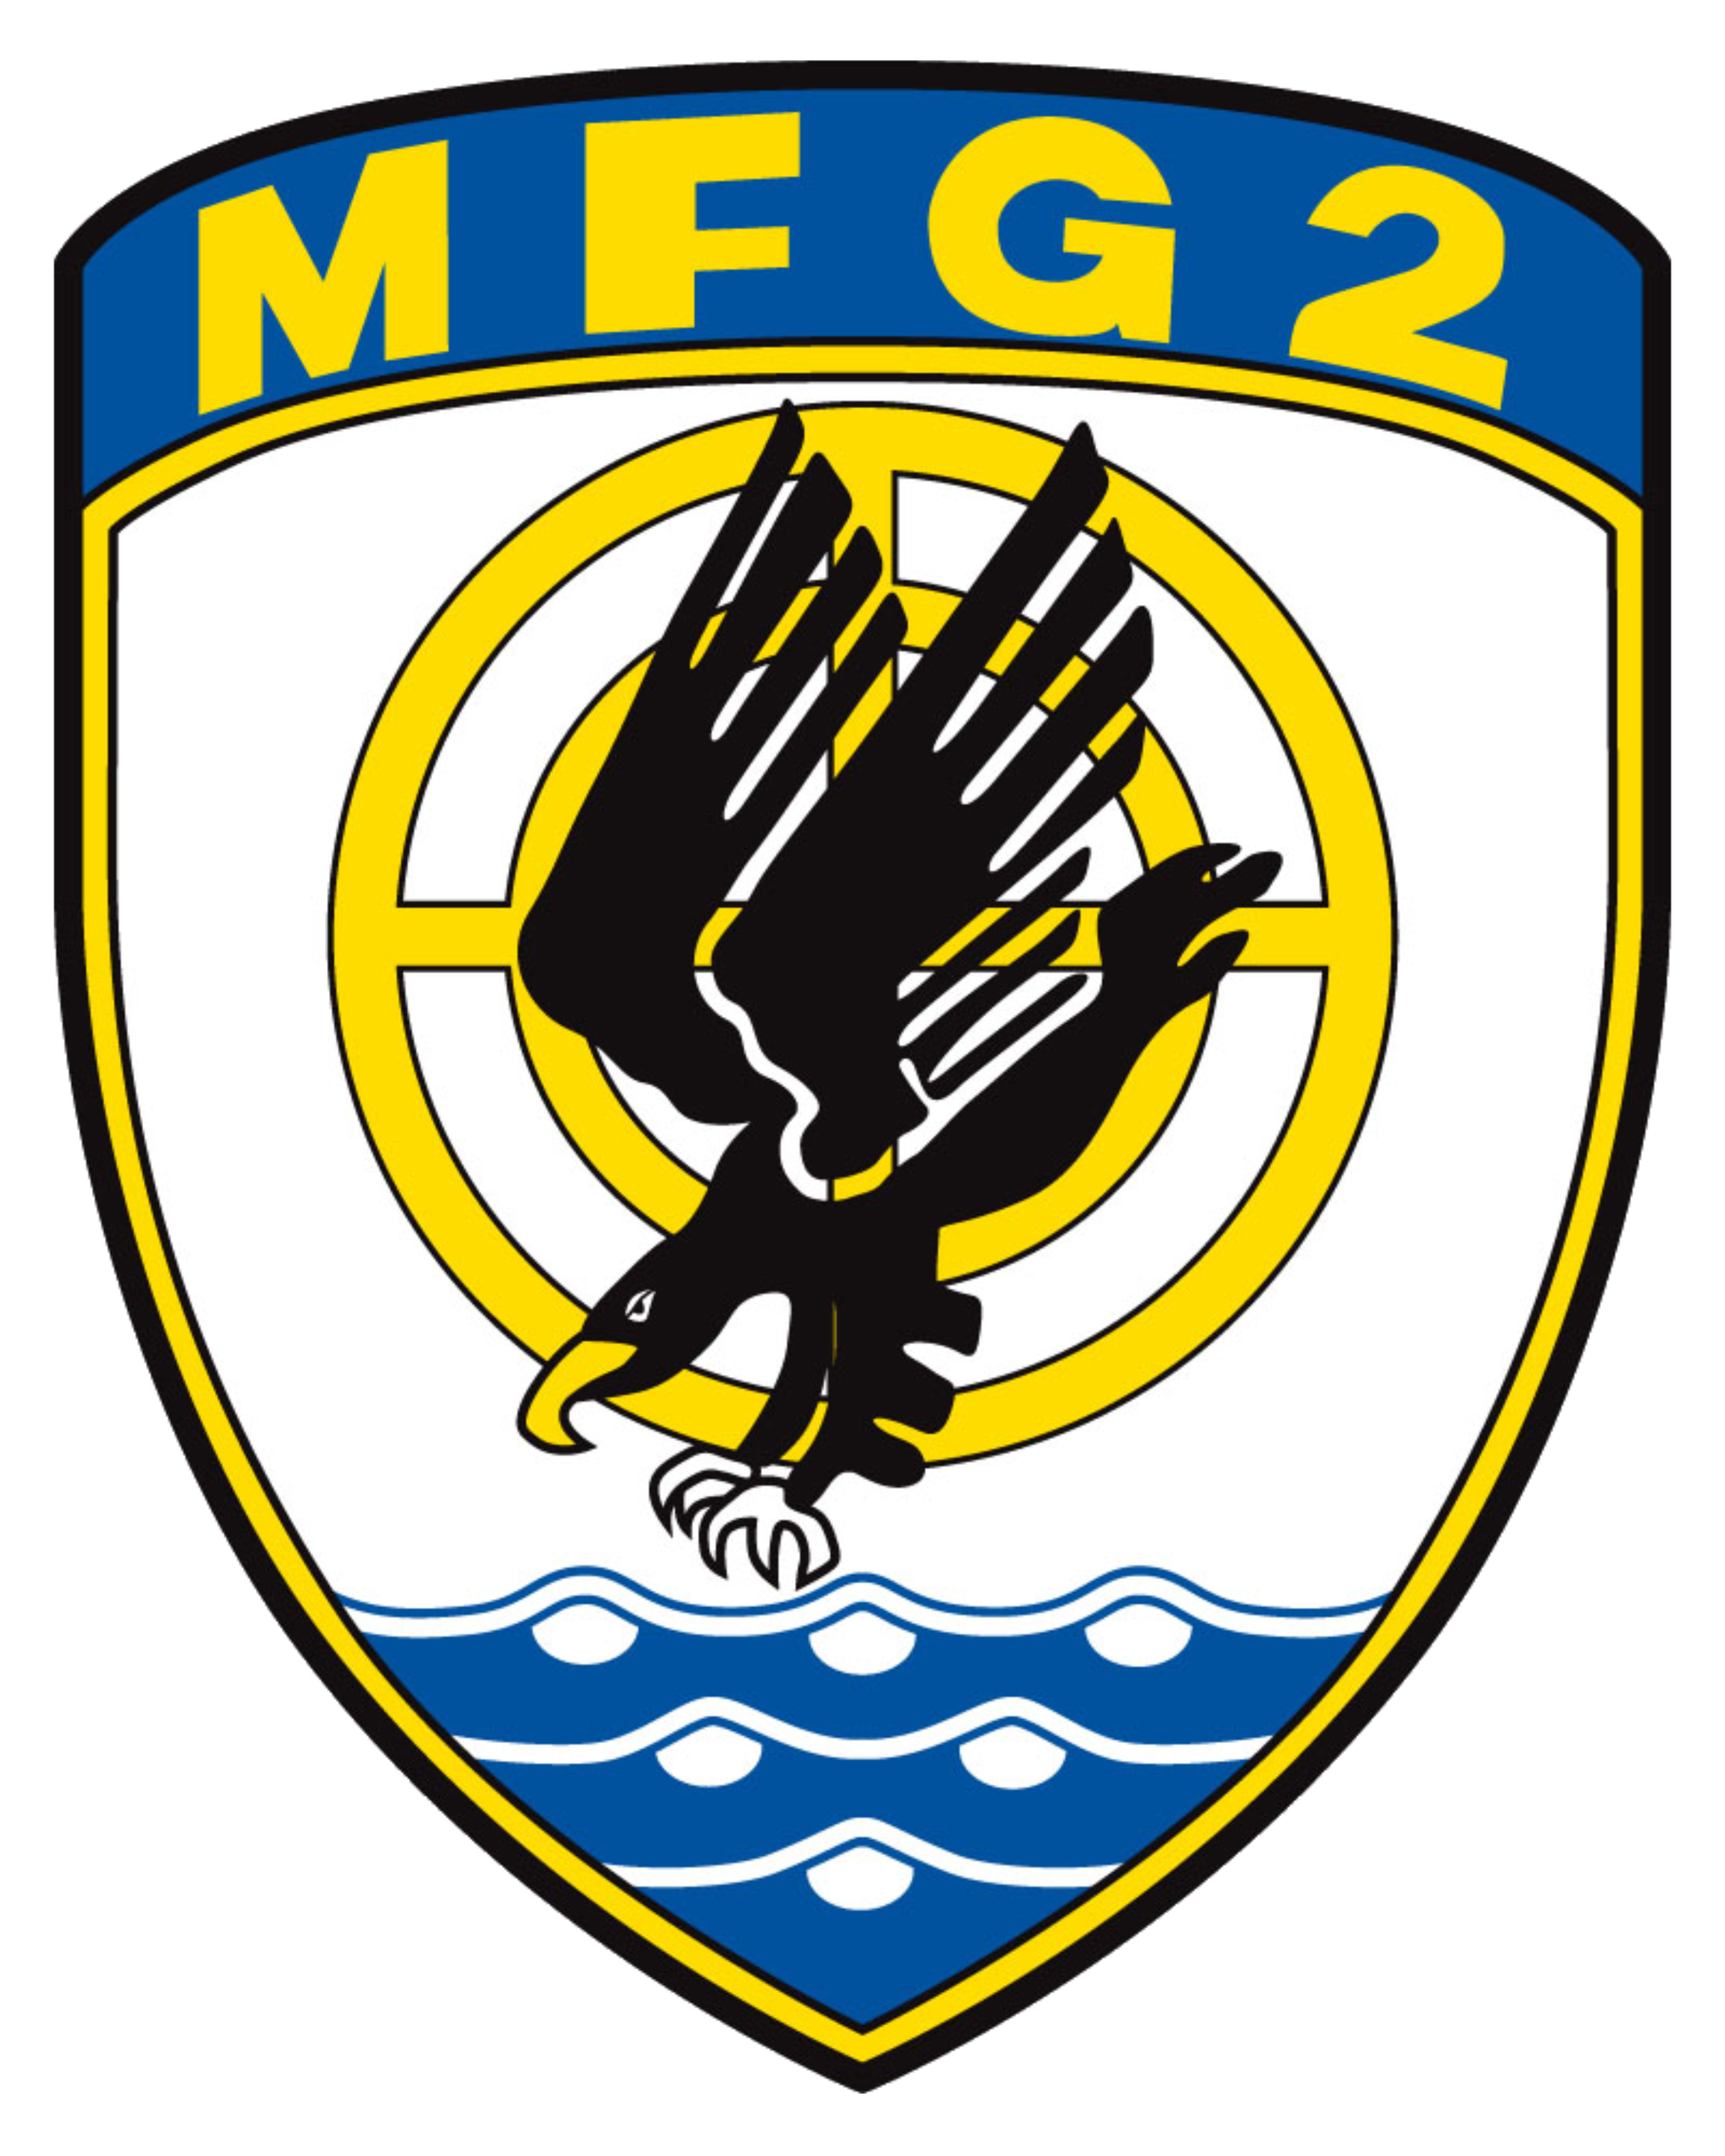 mfg2 logo